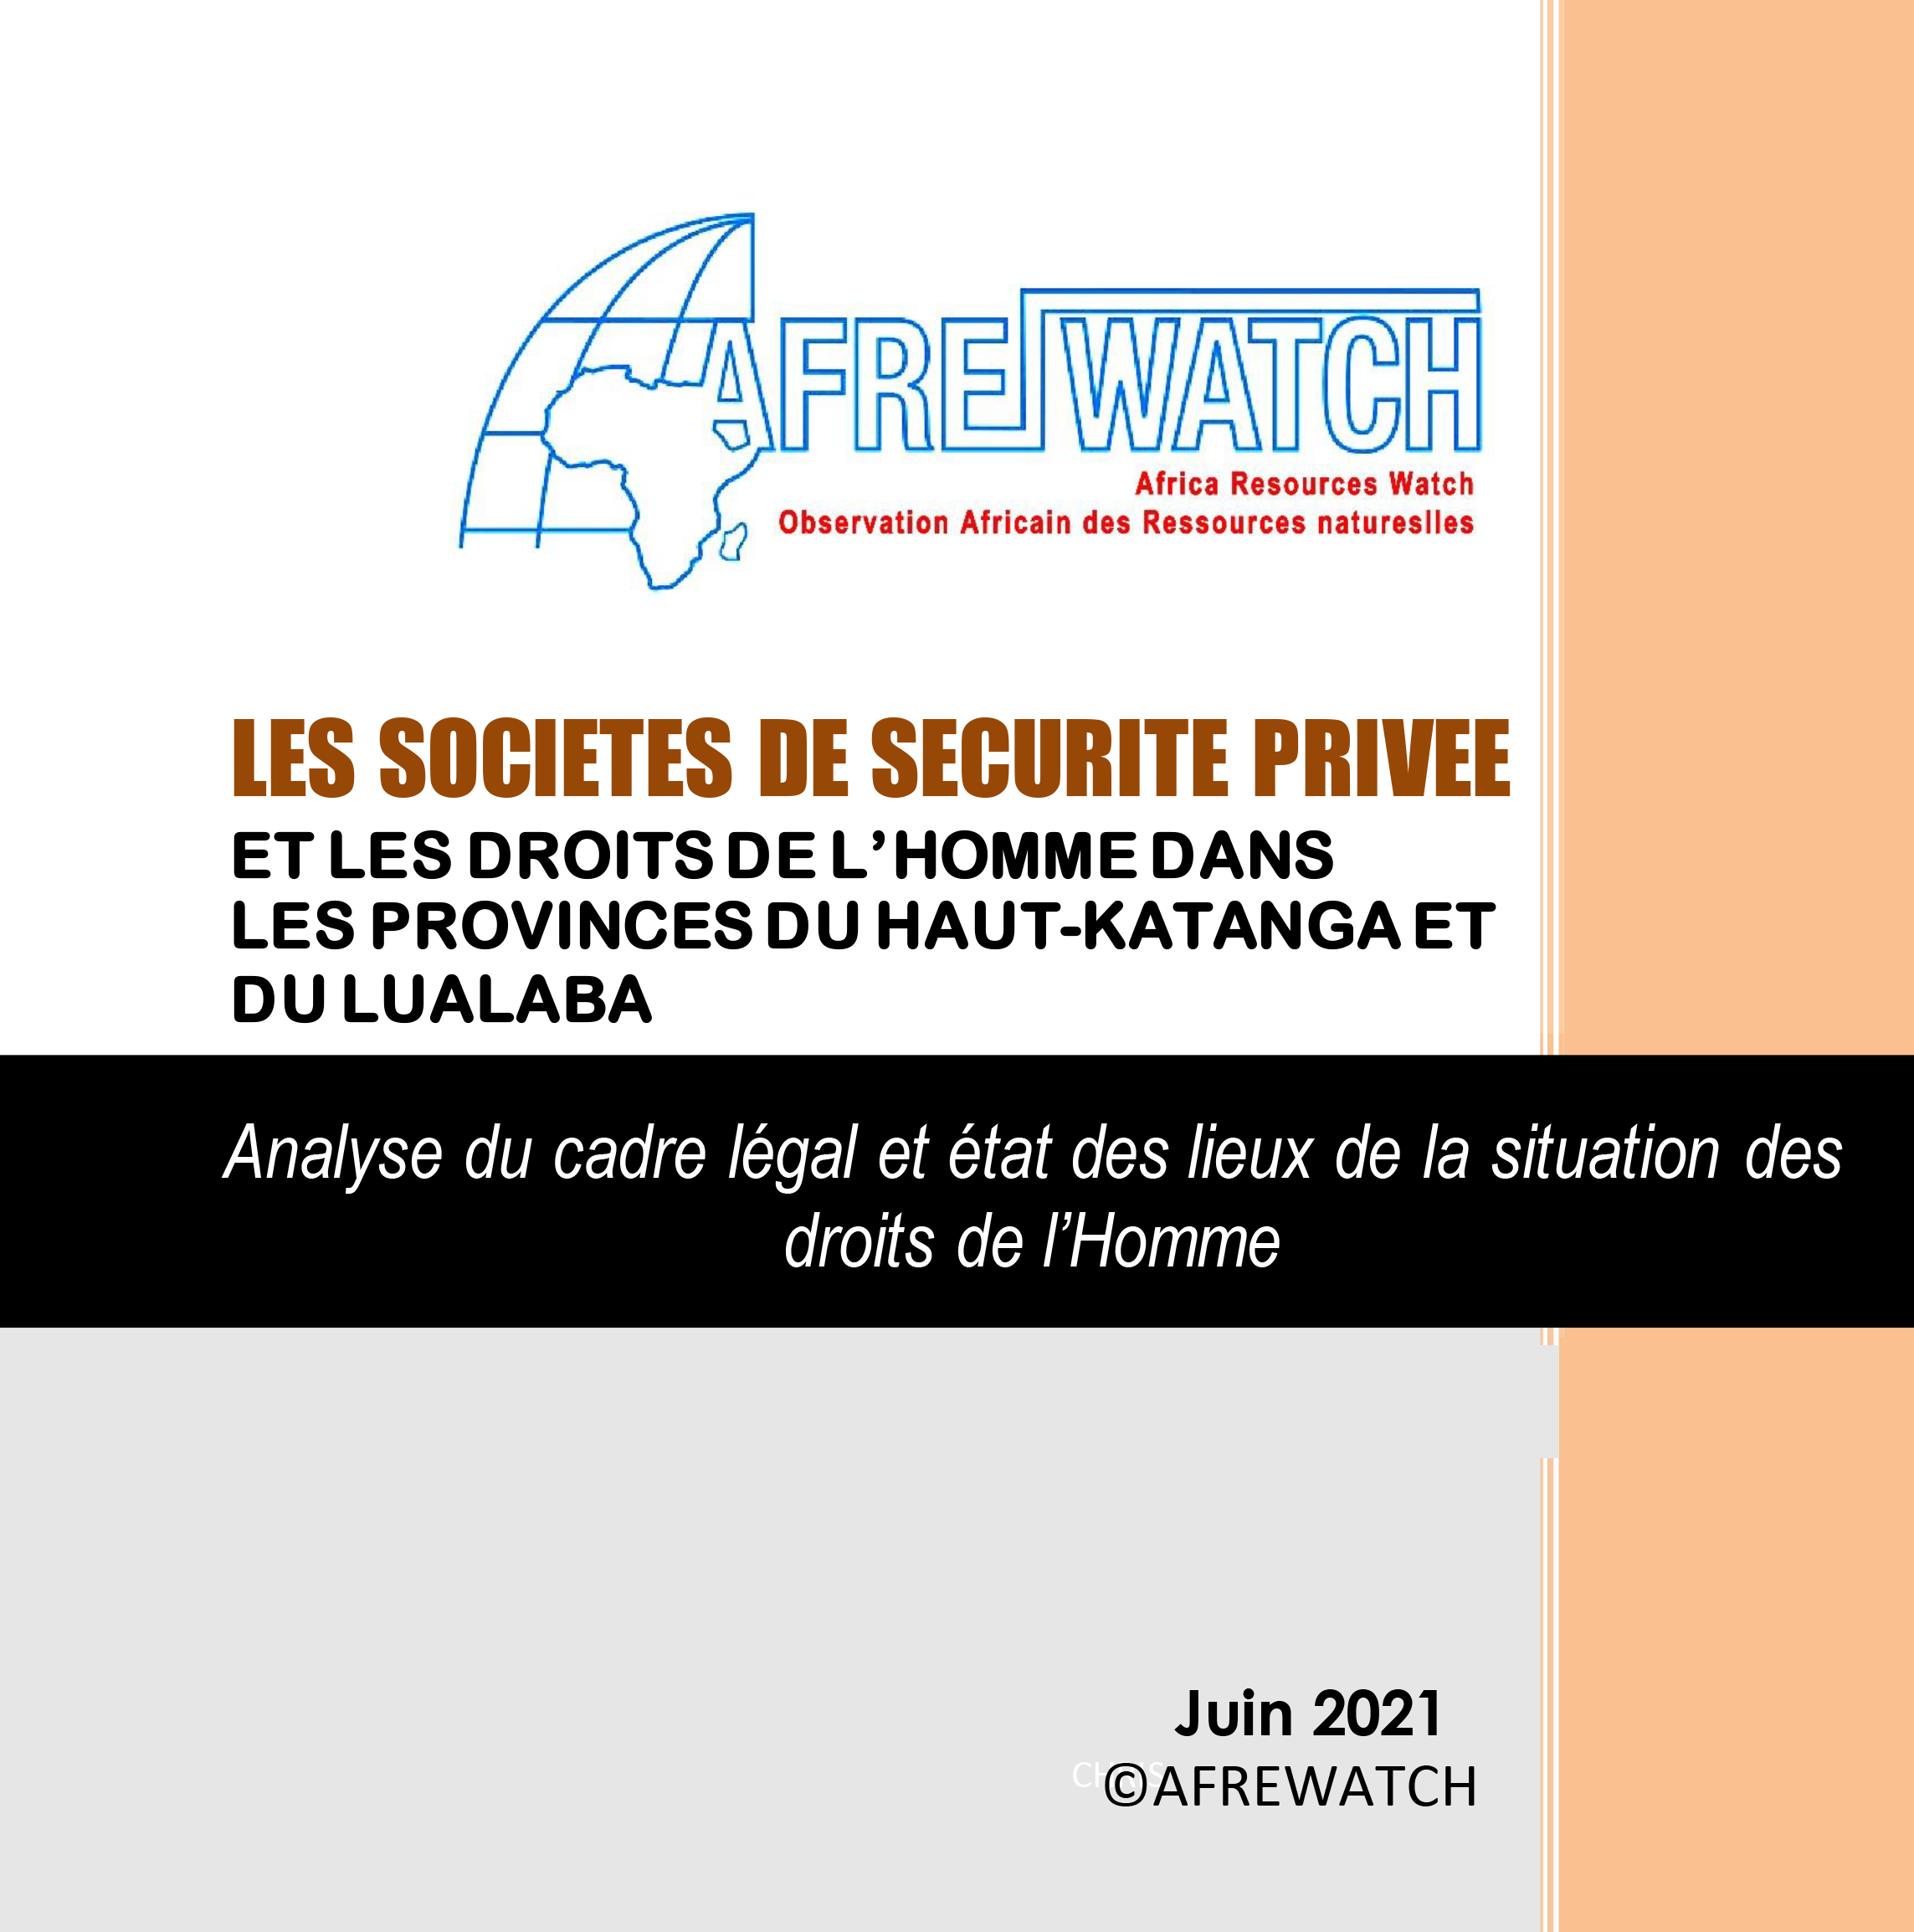 AFREWATCH vient de publier son rapport sur les sociétés de sécurité privée et les droits de l’homme dans les provinces du Haut-Katanga et du Lualaba